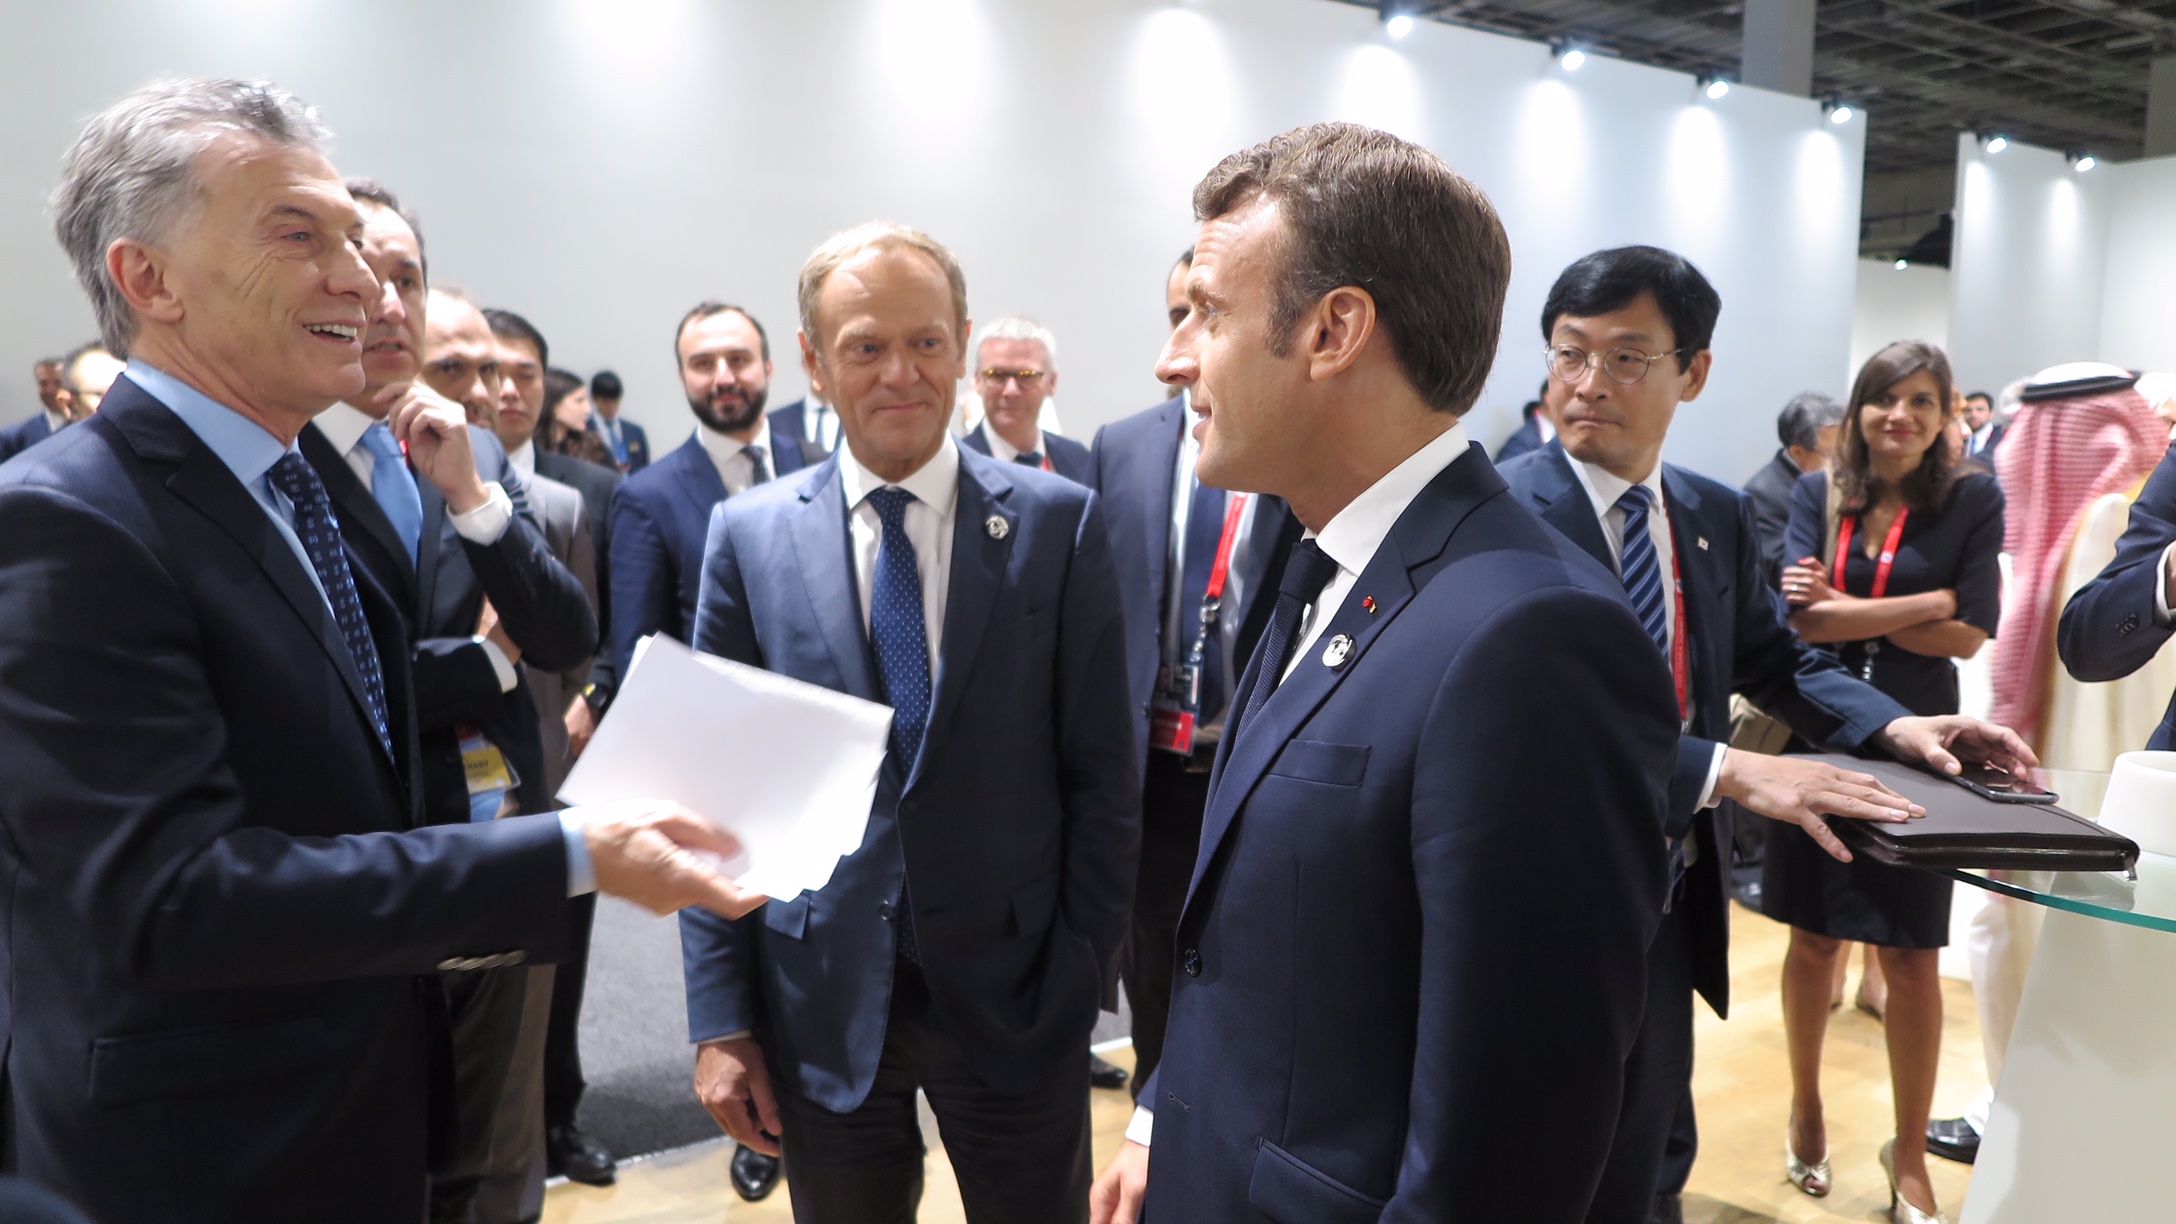 Macri dialogó con Jefes de Estado de distintos países del G20